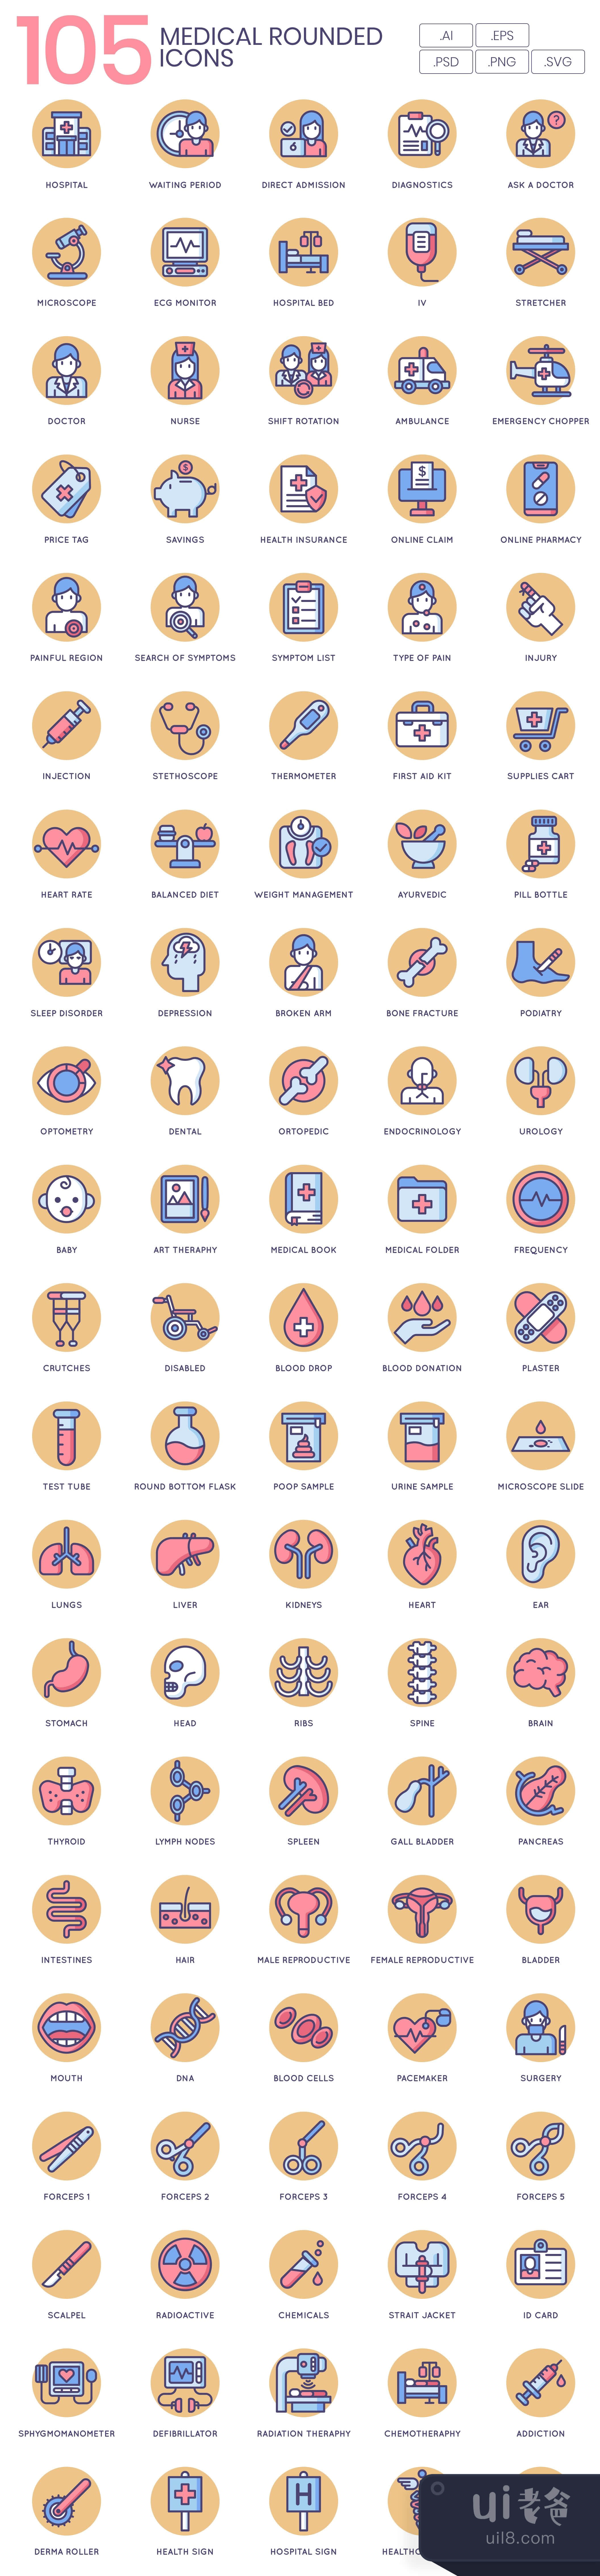 105个医疗图标奶油色系列 (105 Medical Icons  Butterscotch Ser插图